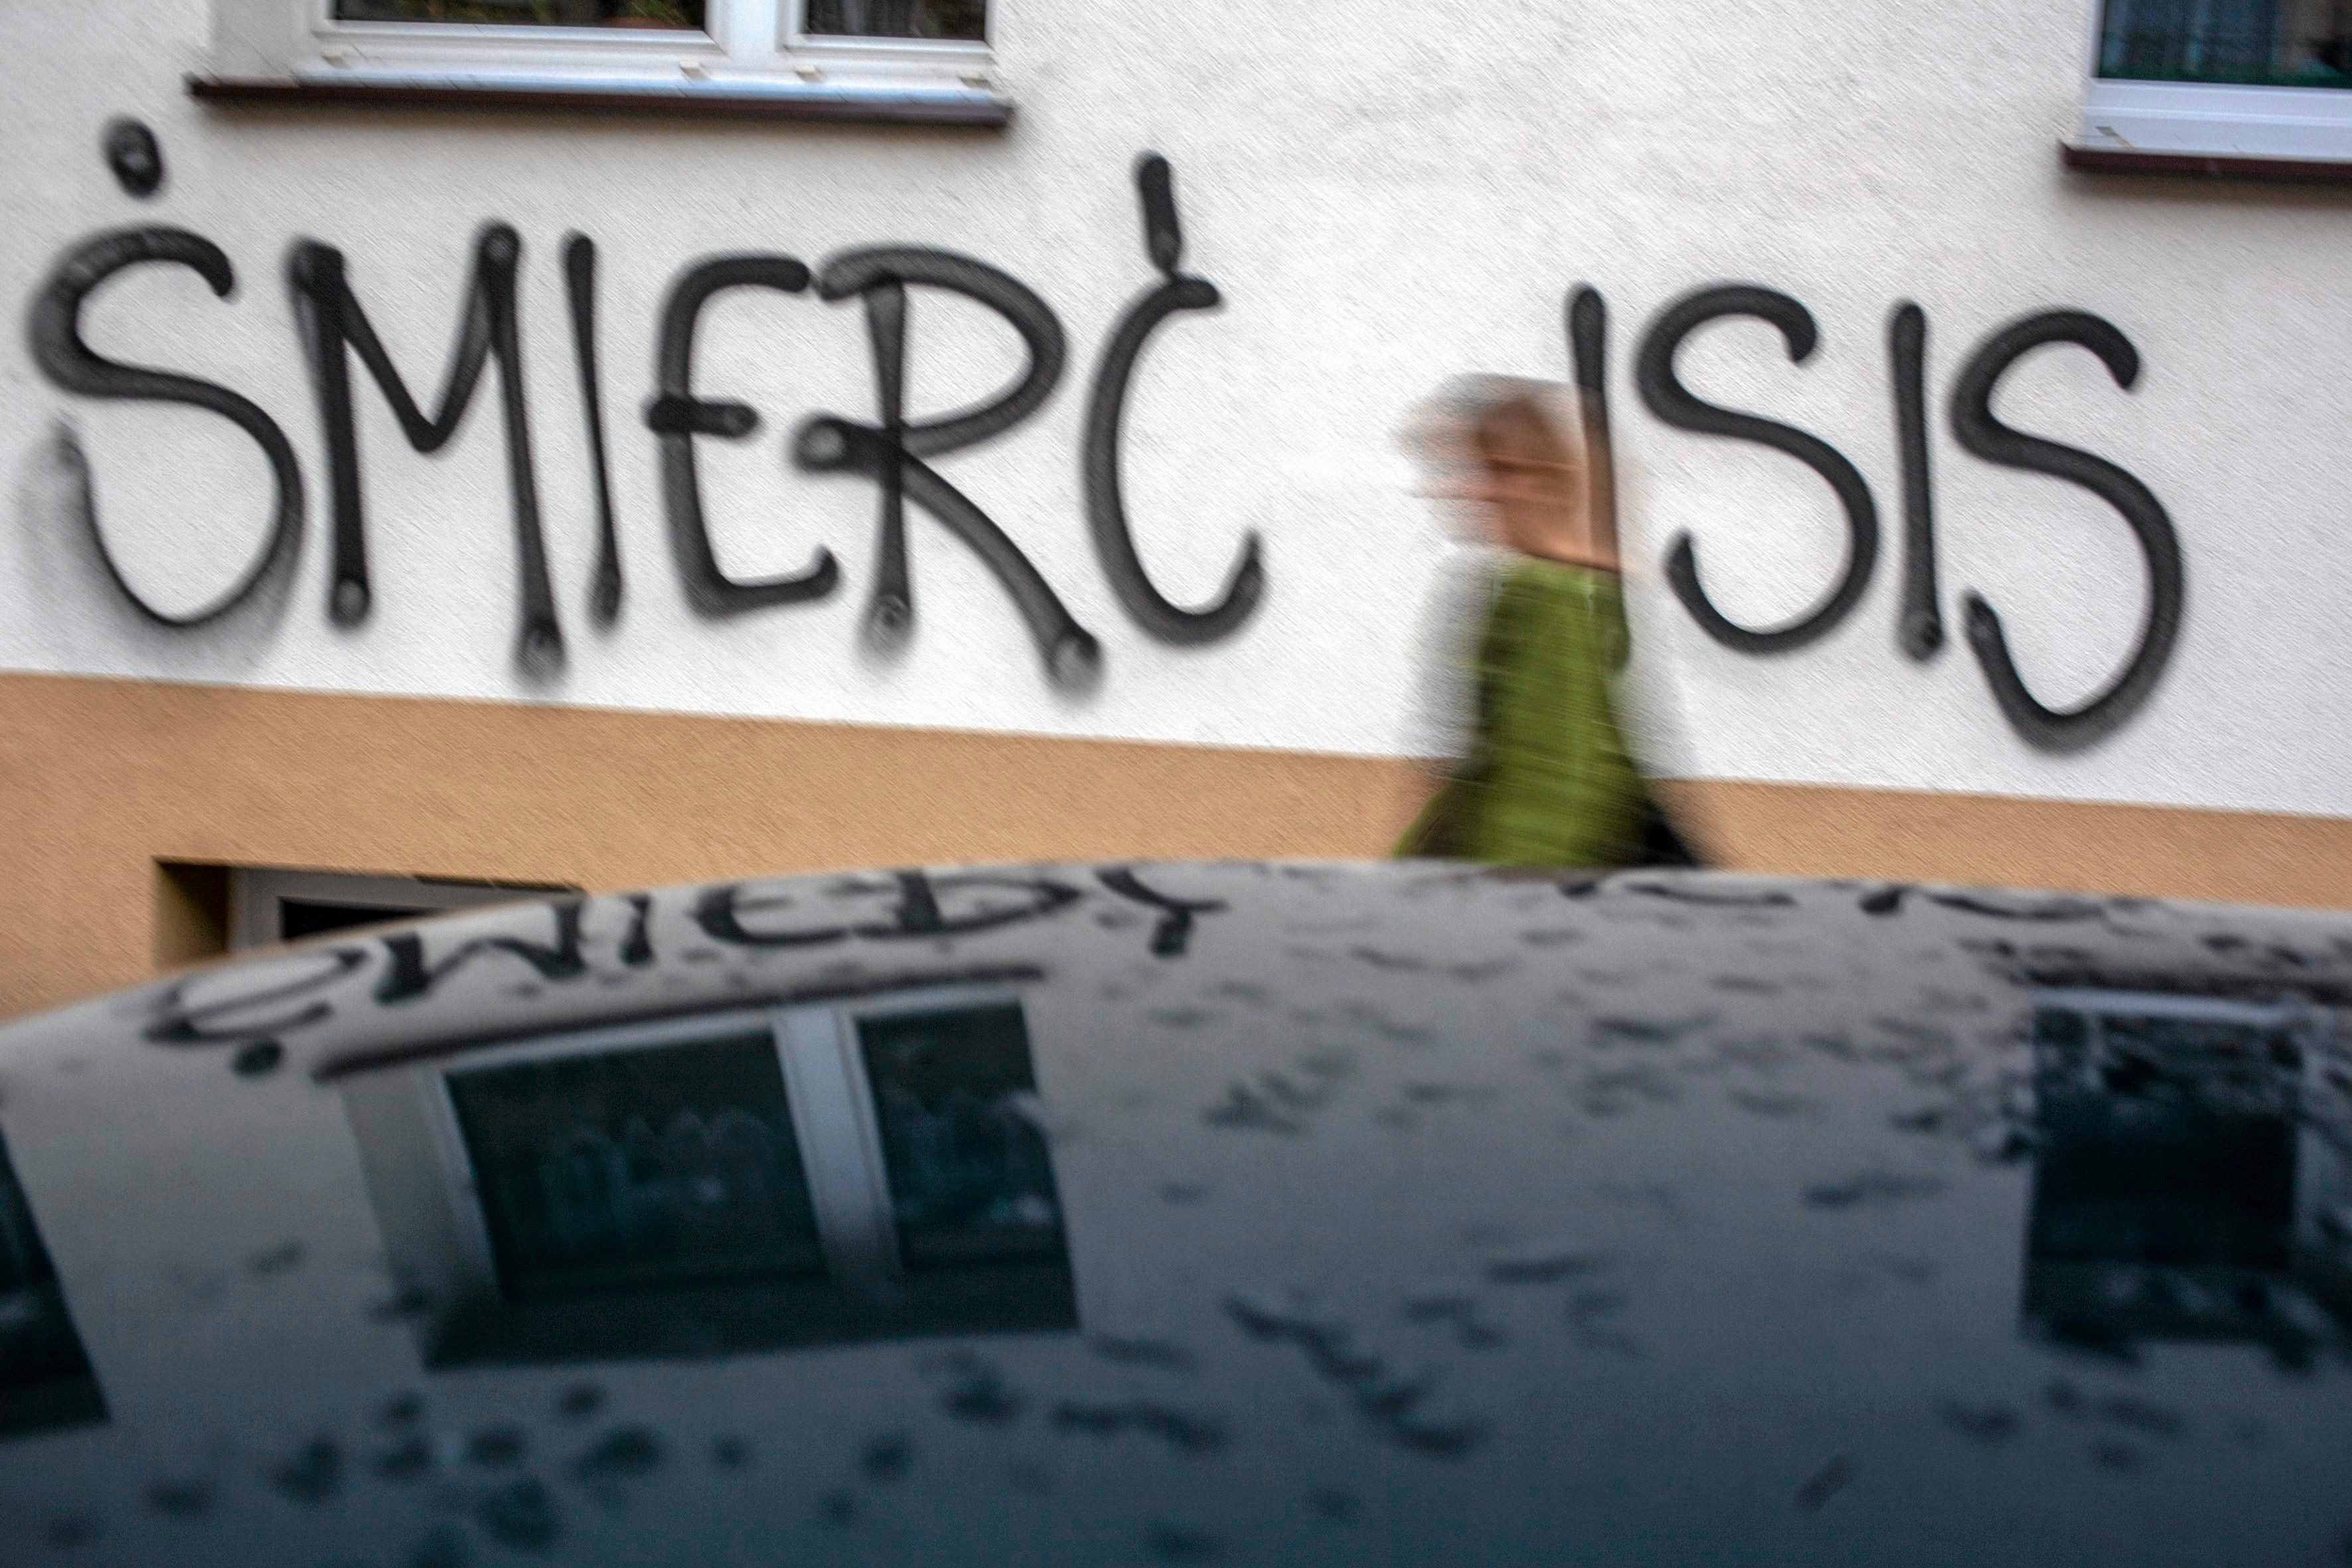 22.11.2015 Krakow . ul. Lea . Napisy na murze kamienicy " Smierc ISIS "  . 
Fot. Jakub Ociepa / Agencja Gazeta